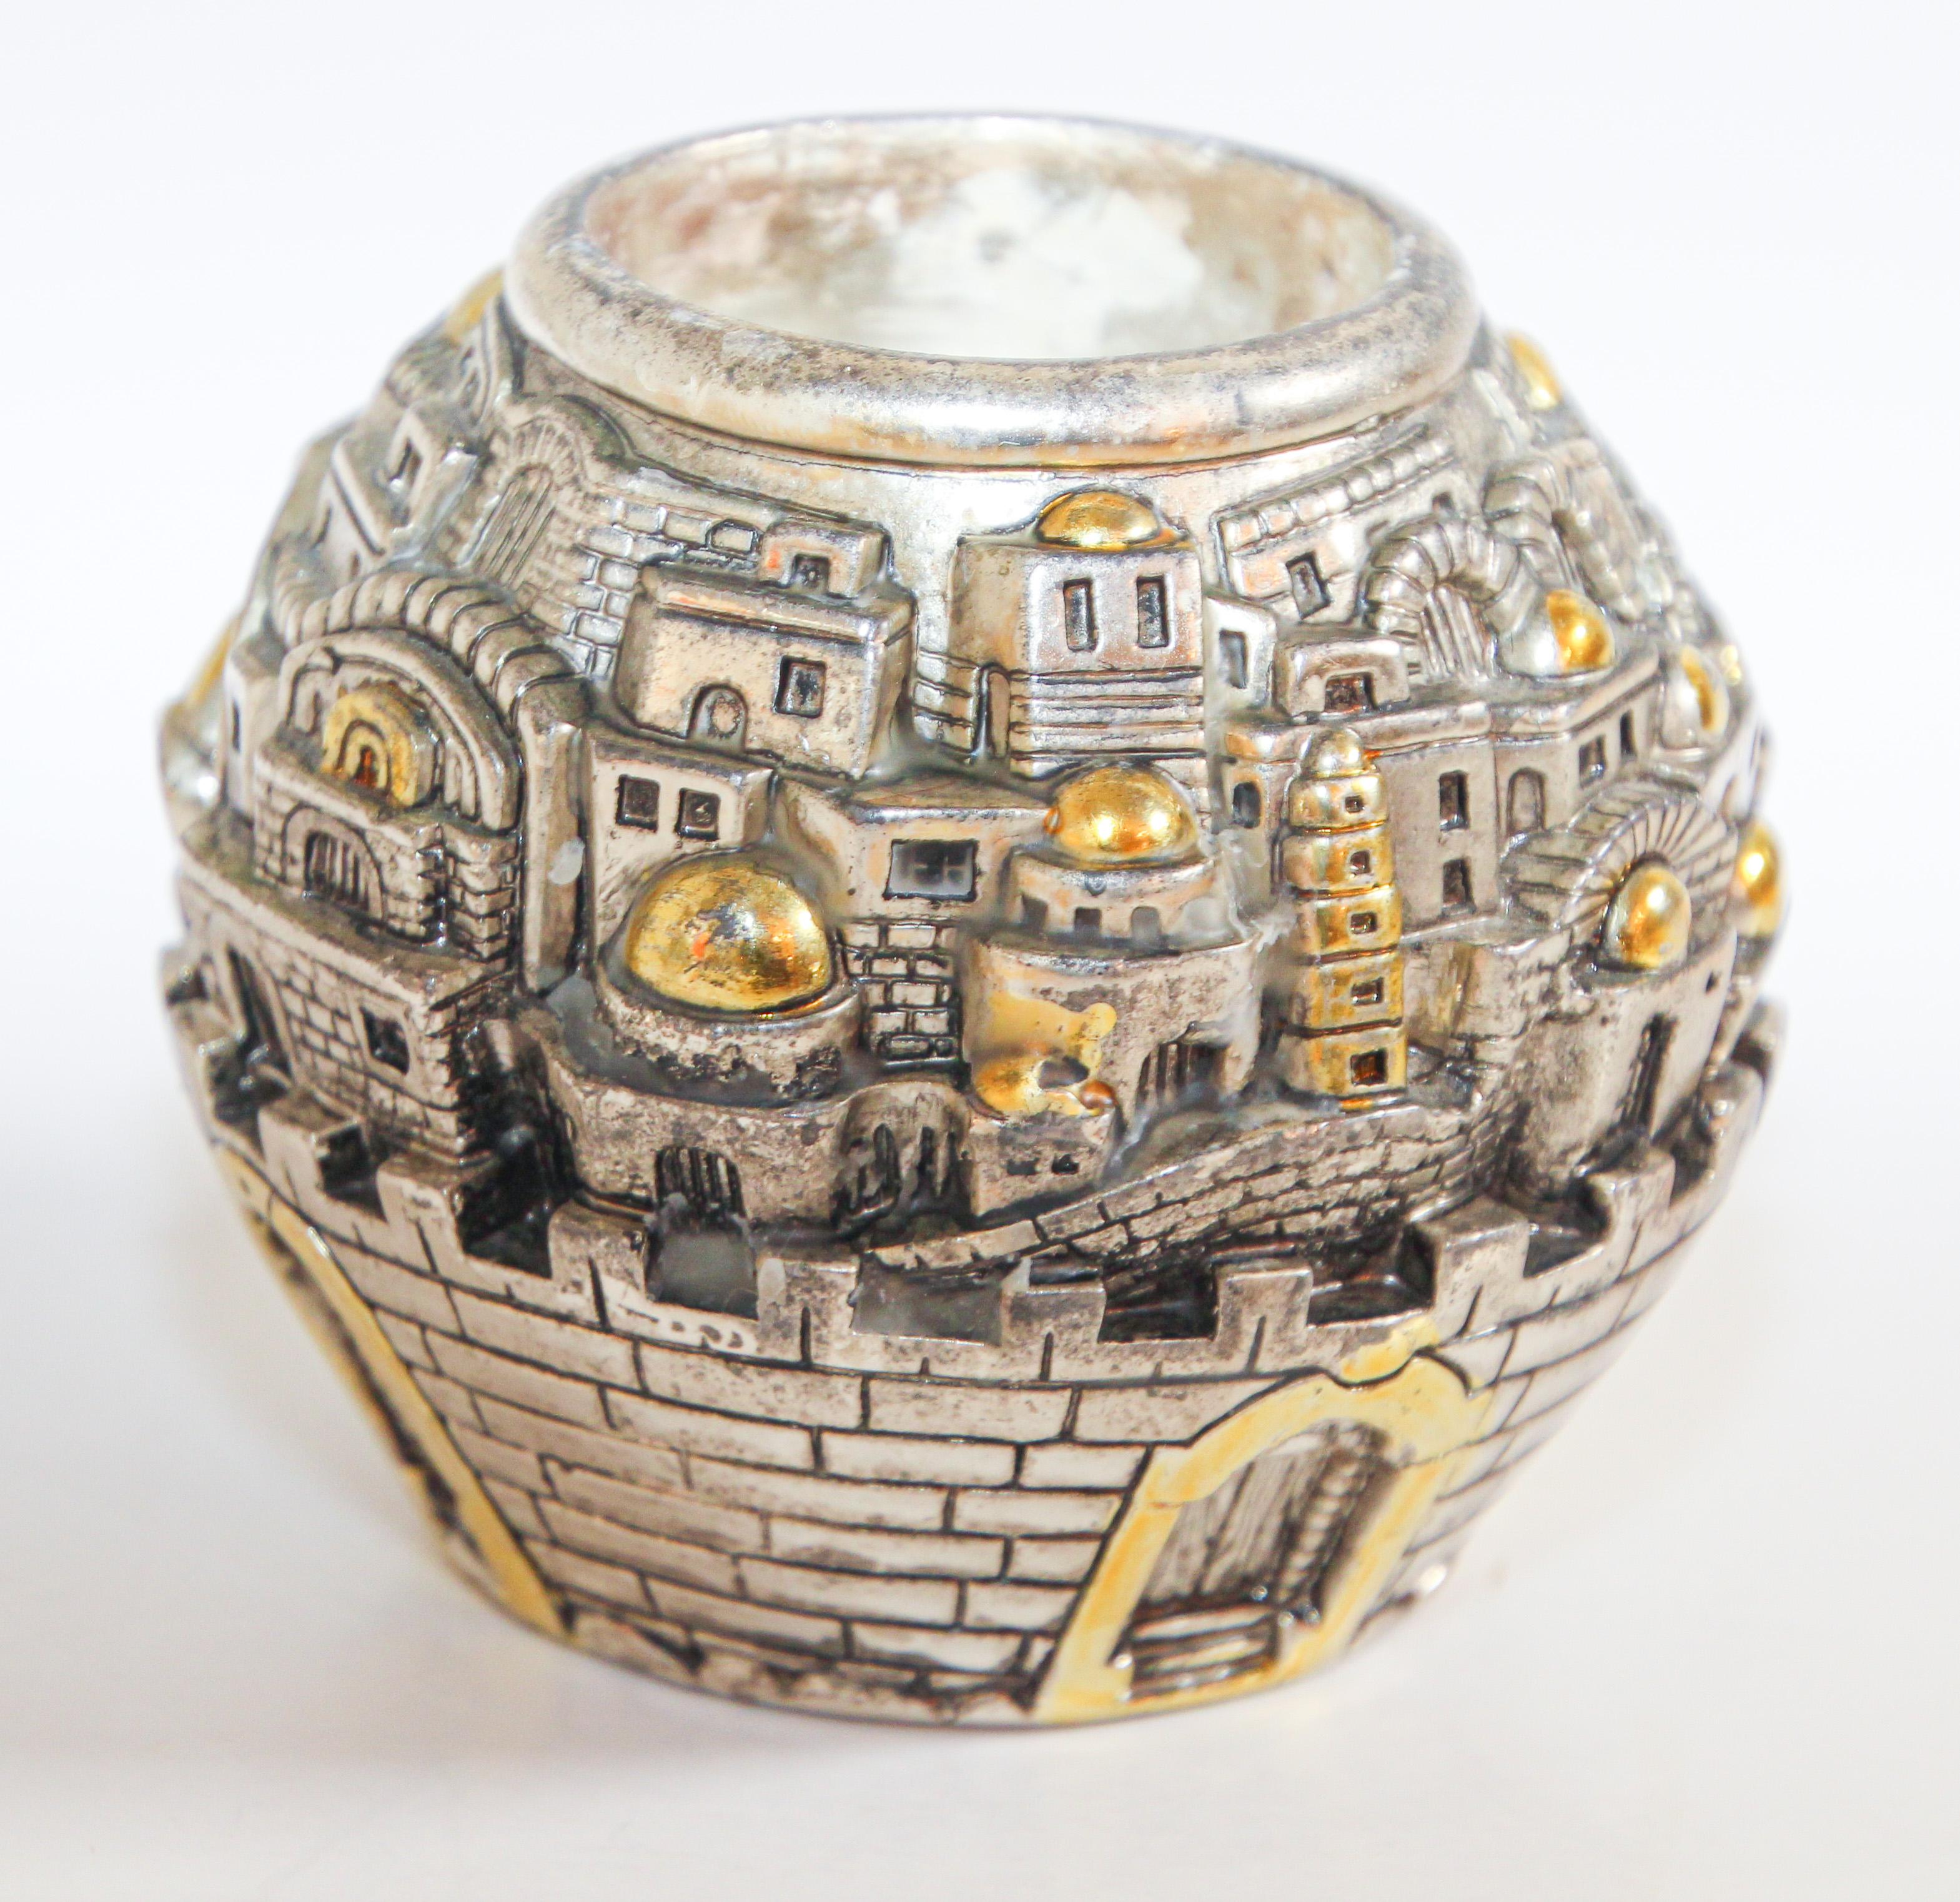 Jerusalem Holy land design round shape tea light holder.
Silver plated with gold tone candleholder representing Jerusalem’s view.
Vintage candleholder engraved 925, Jerusalem Holy land.